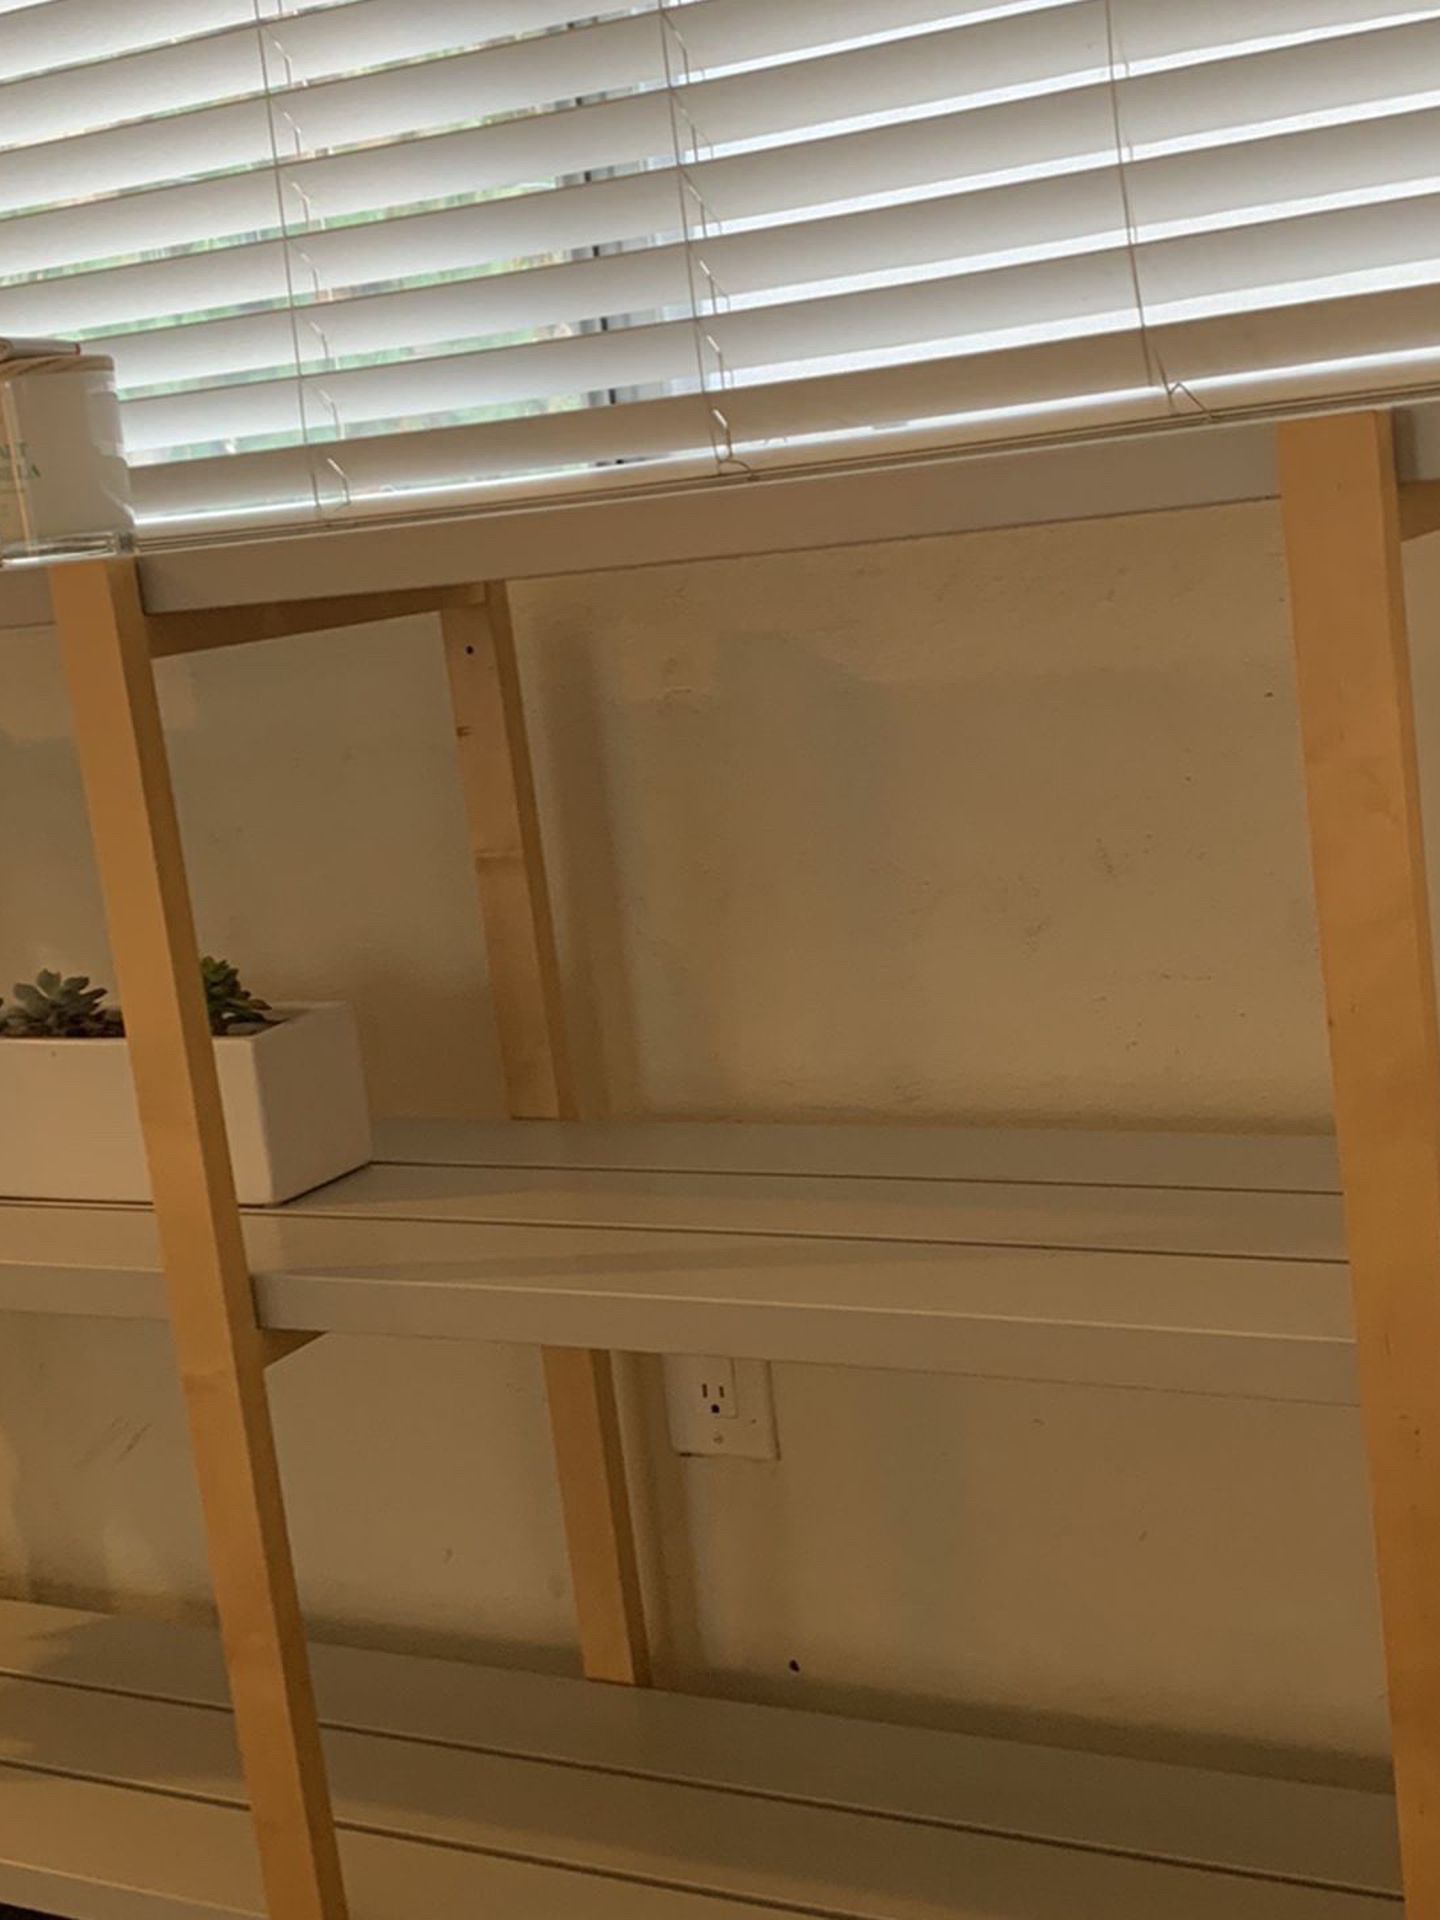 Ikea 3 Tier Metal Shelf